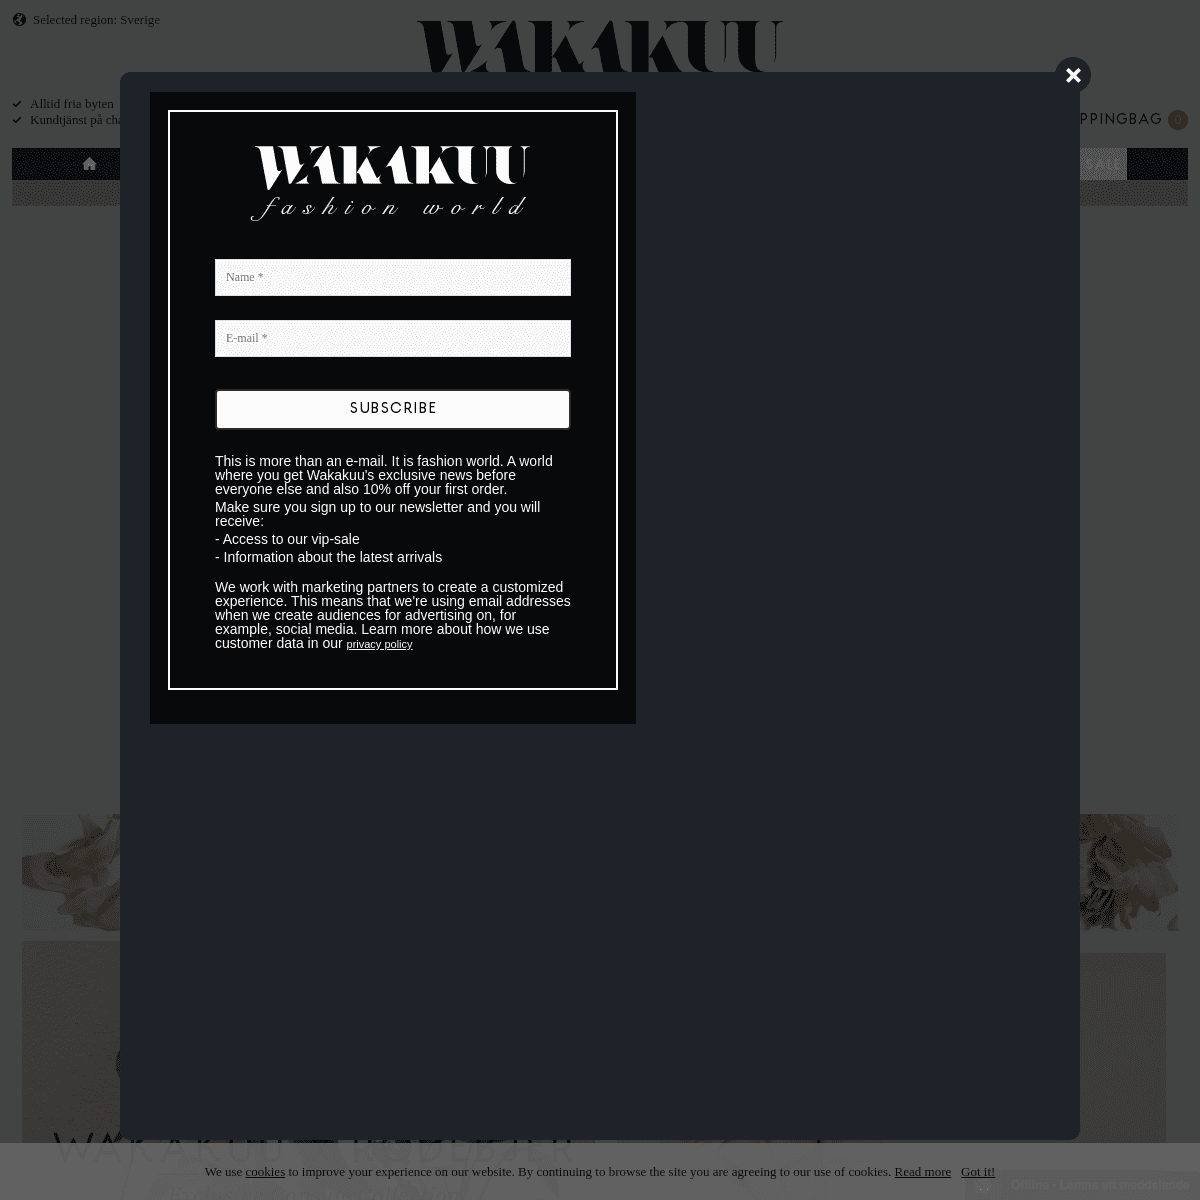 A complete backup of wakakuu.com